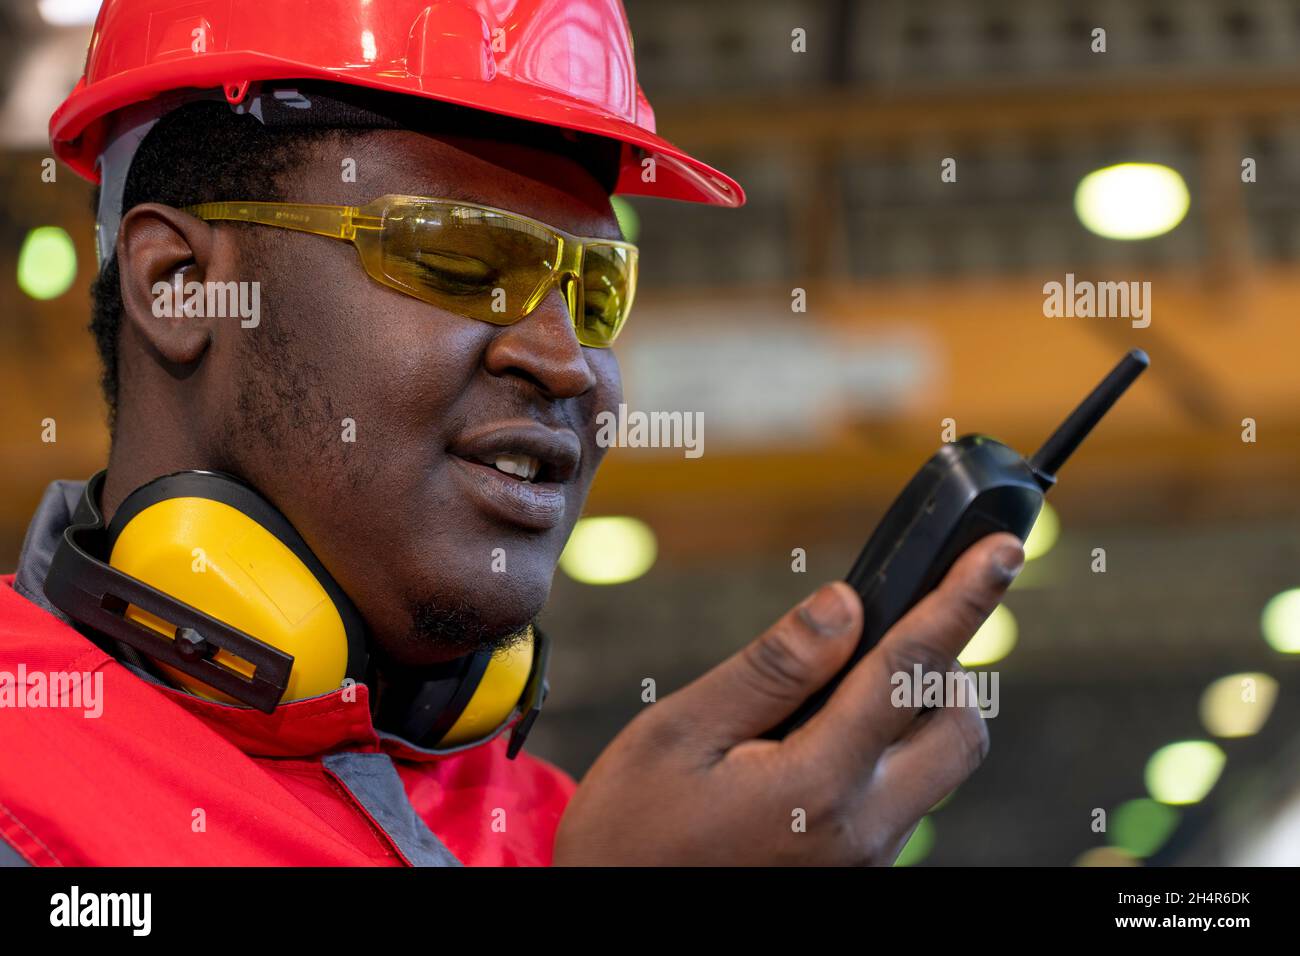 Portrait Eines Schwarzen Industriearbeiters In Rotem Helm, Gelber Schutzbrille, Gehörschutzausrüstung Und Arbeitskleidung. Stockfoto